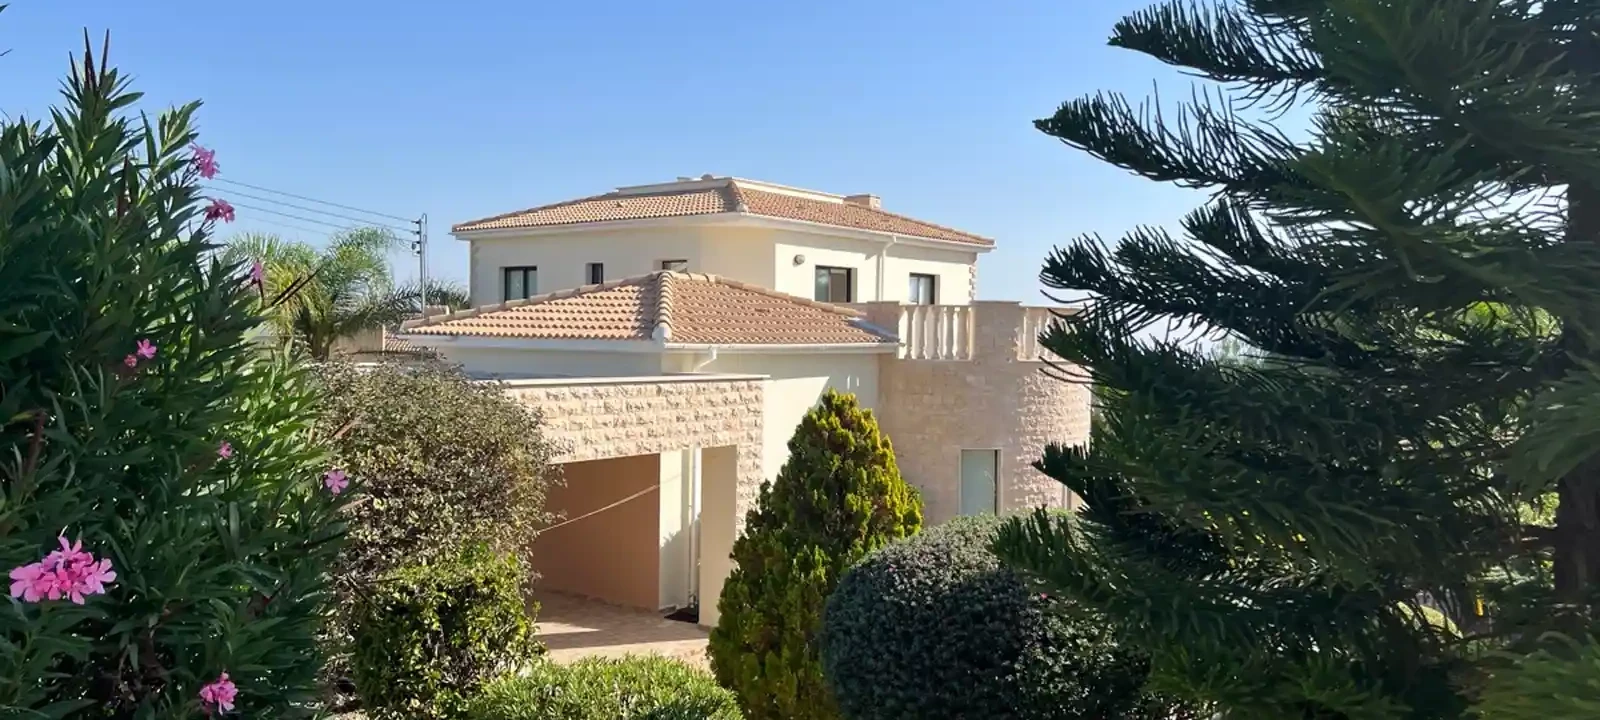 4-bedroom villa to rent €2.800, image 1